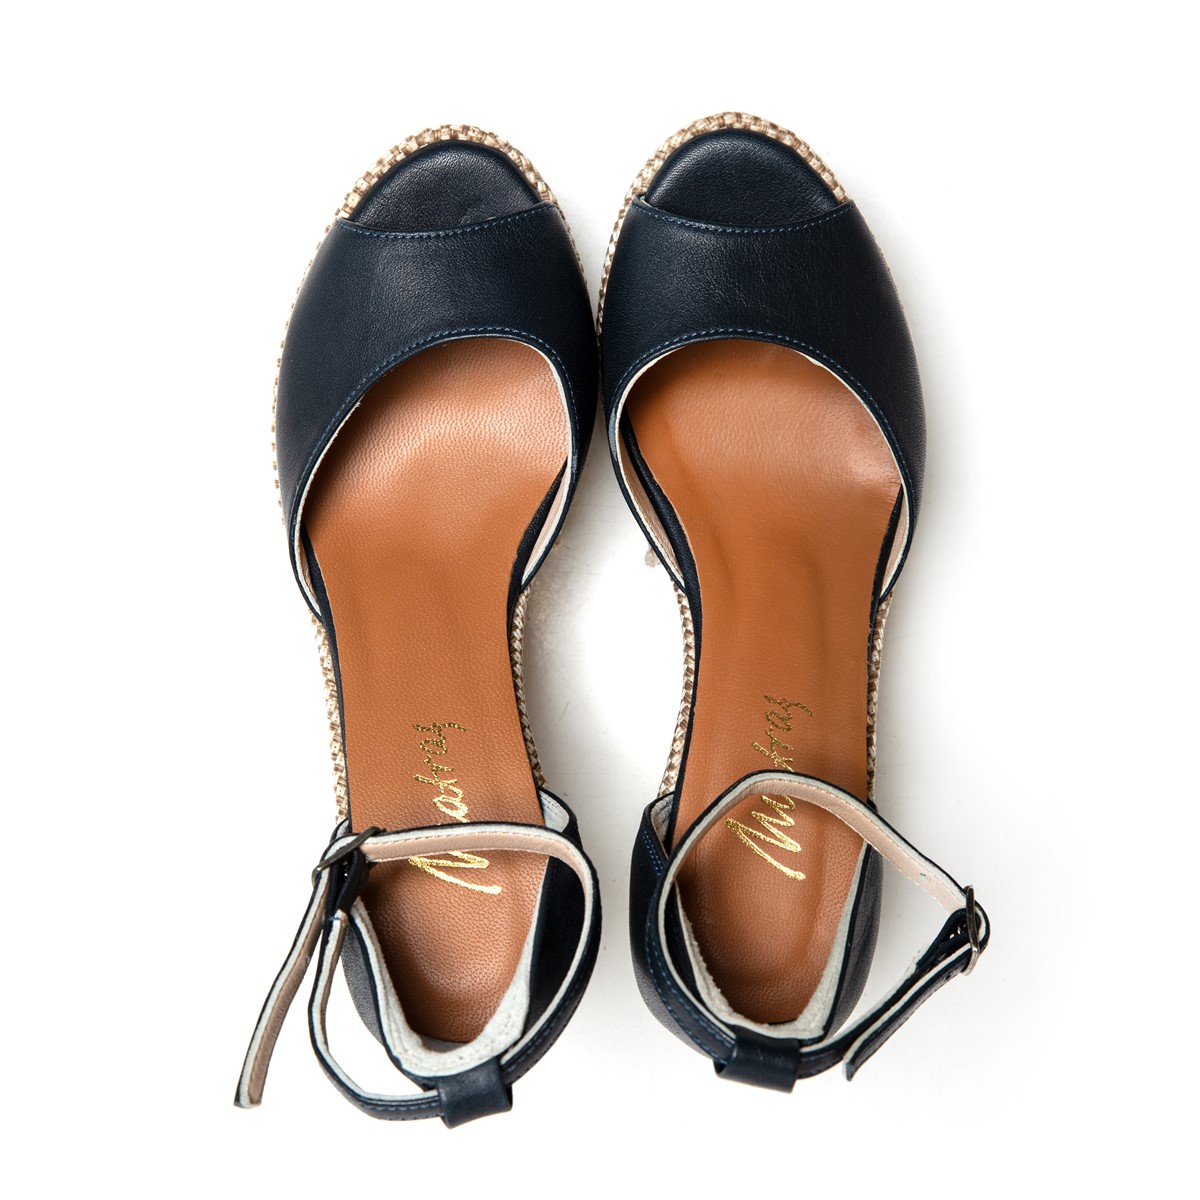 Matraş Kadın Deri Dolgu Topuklu Ayakkabı  Lacivert 9FF-1168